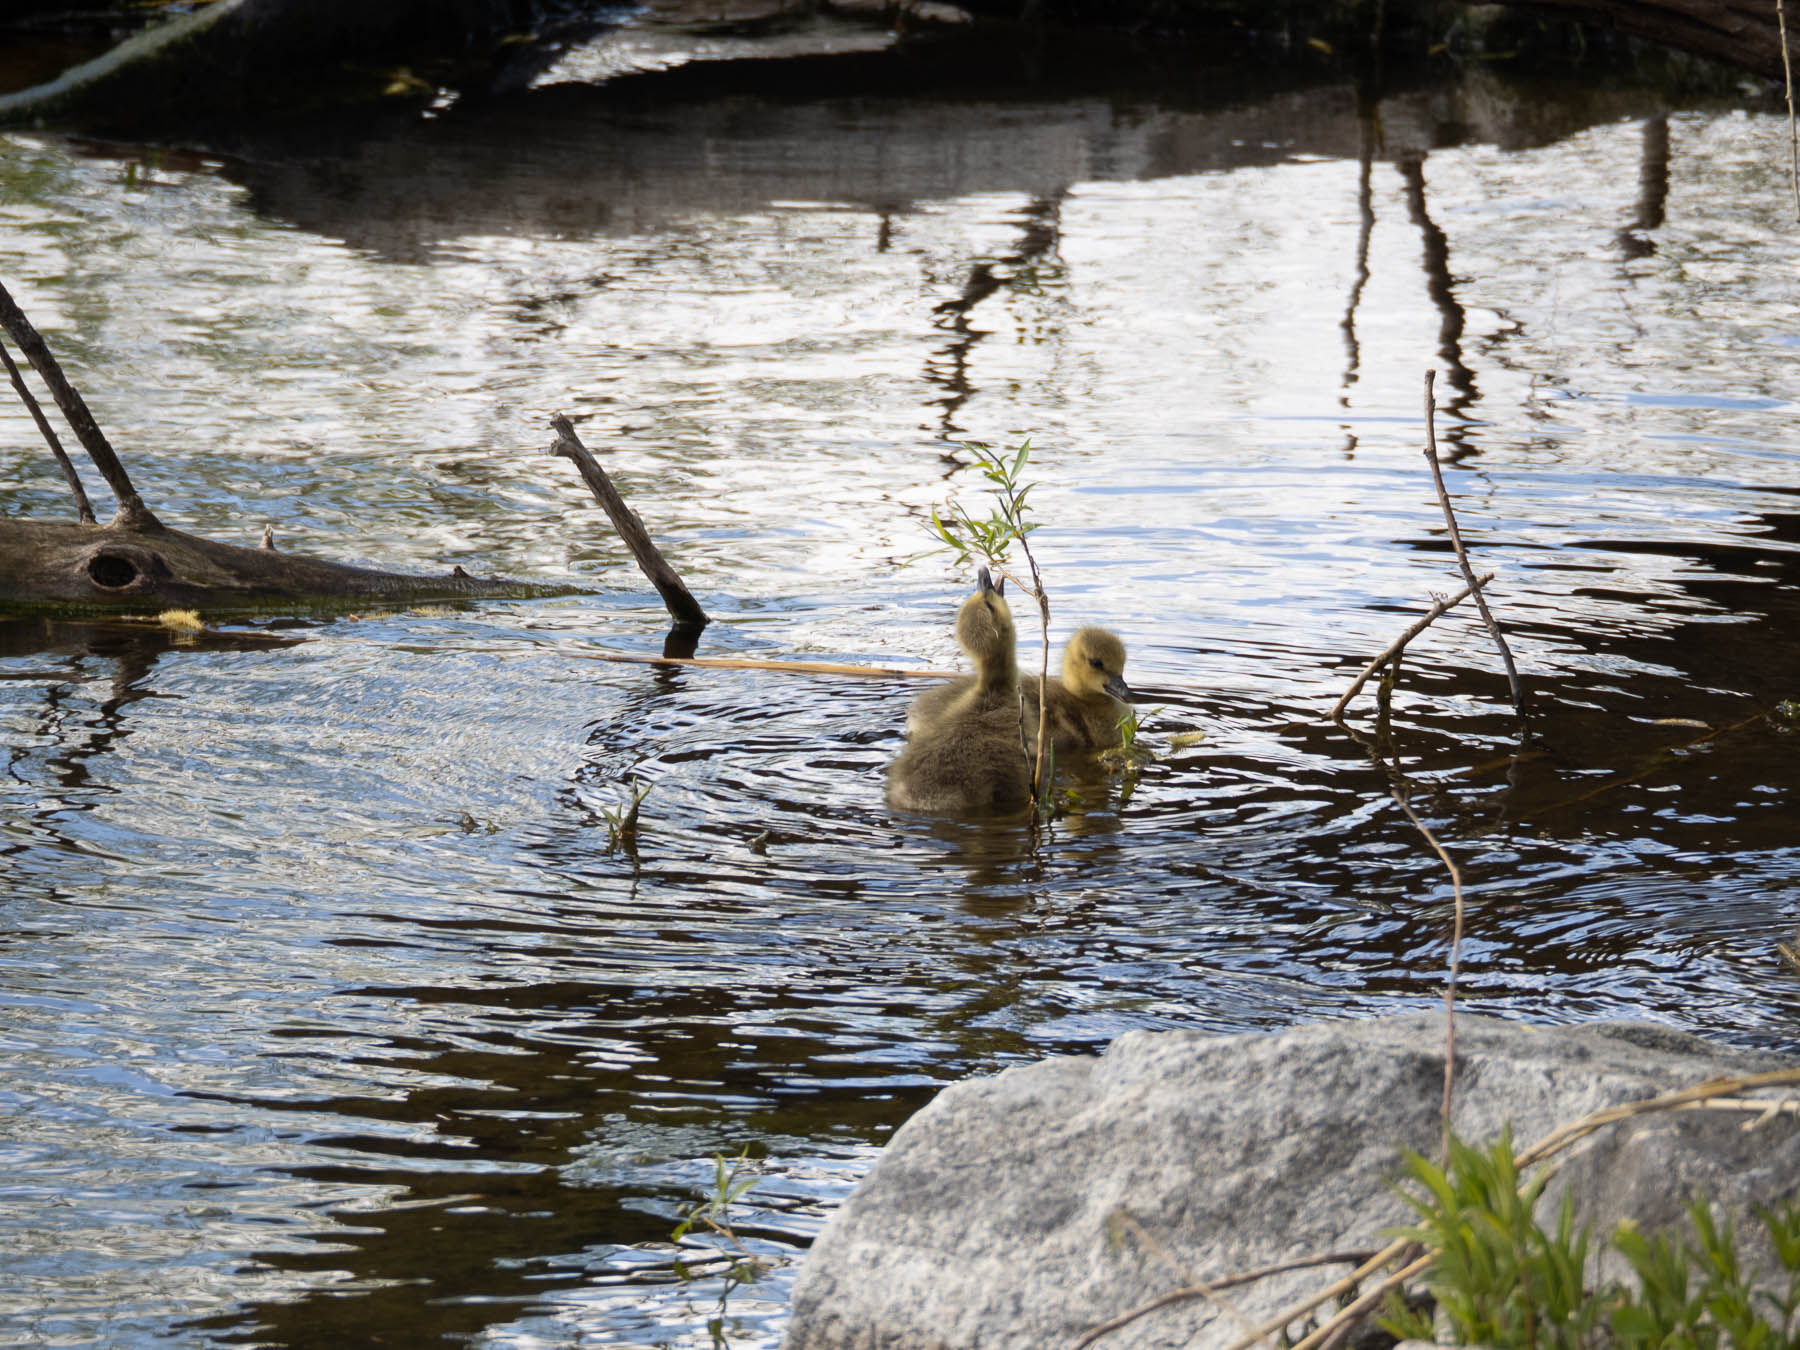 Гибрид серого гуся и канадской казарки (Anser anser x Branta canadensis)Озеро Mälaren, Швеция. Май 2020 г. Автор фото: Сутормина Марина